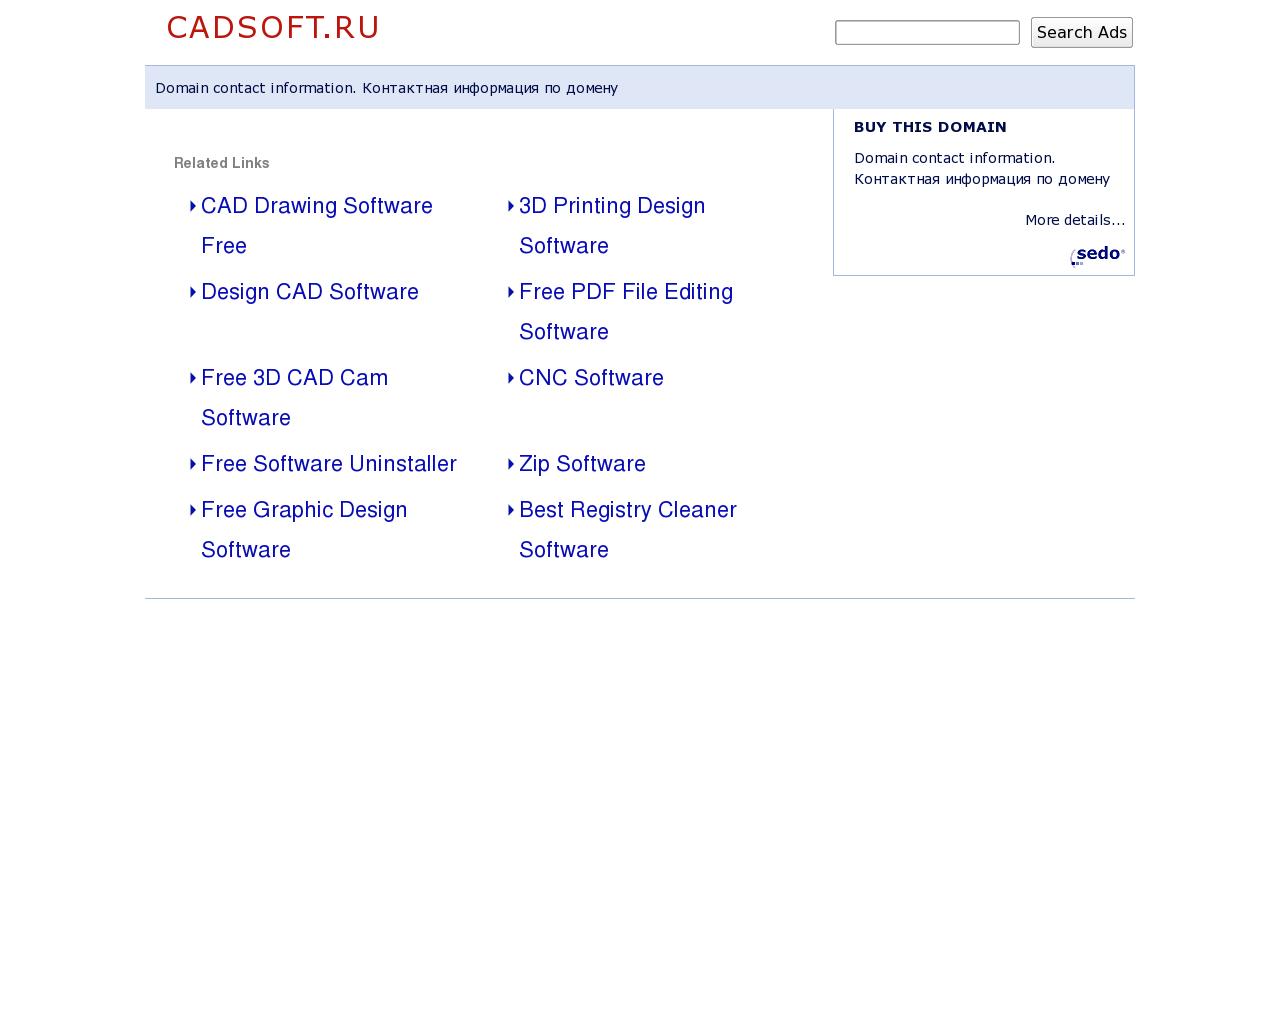 Изображение сайта cadsoft.ru в разрешении 1280x1024